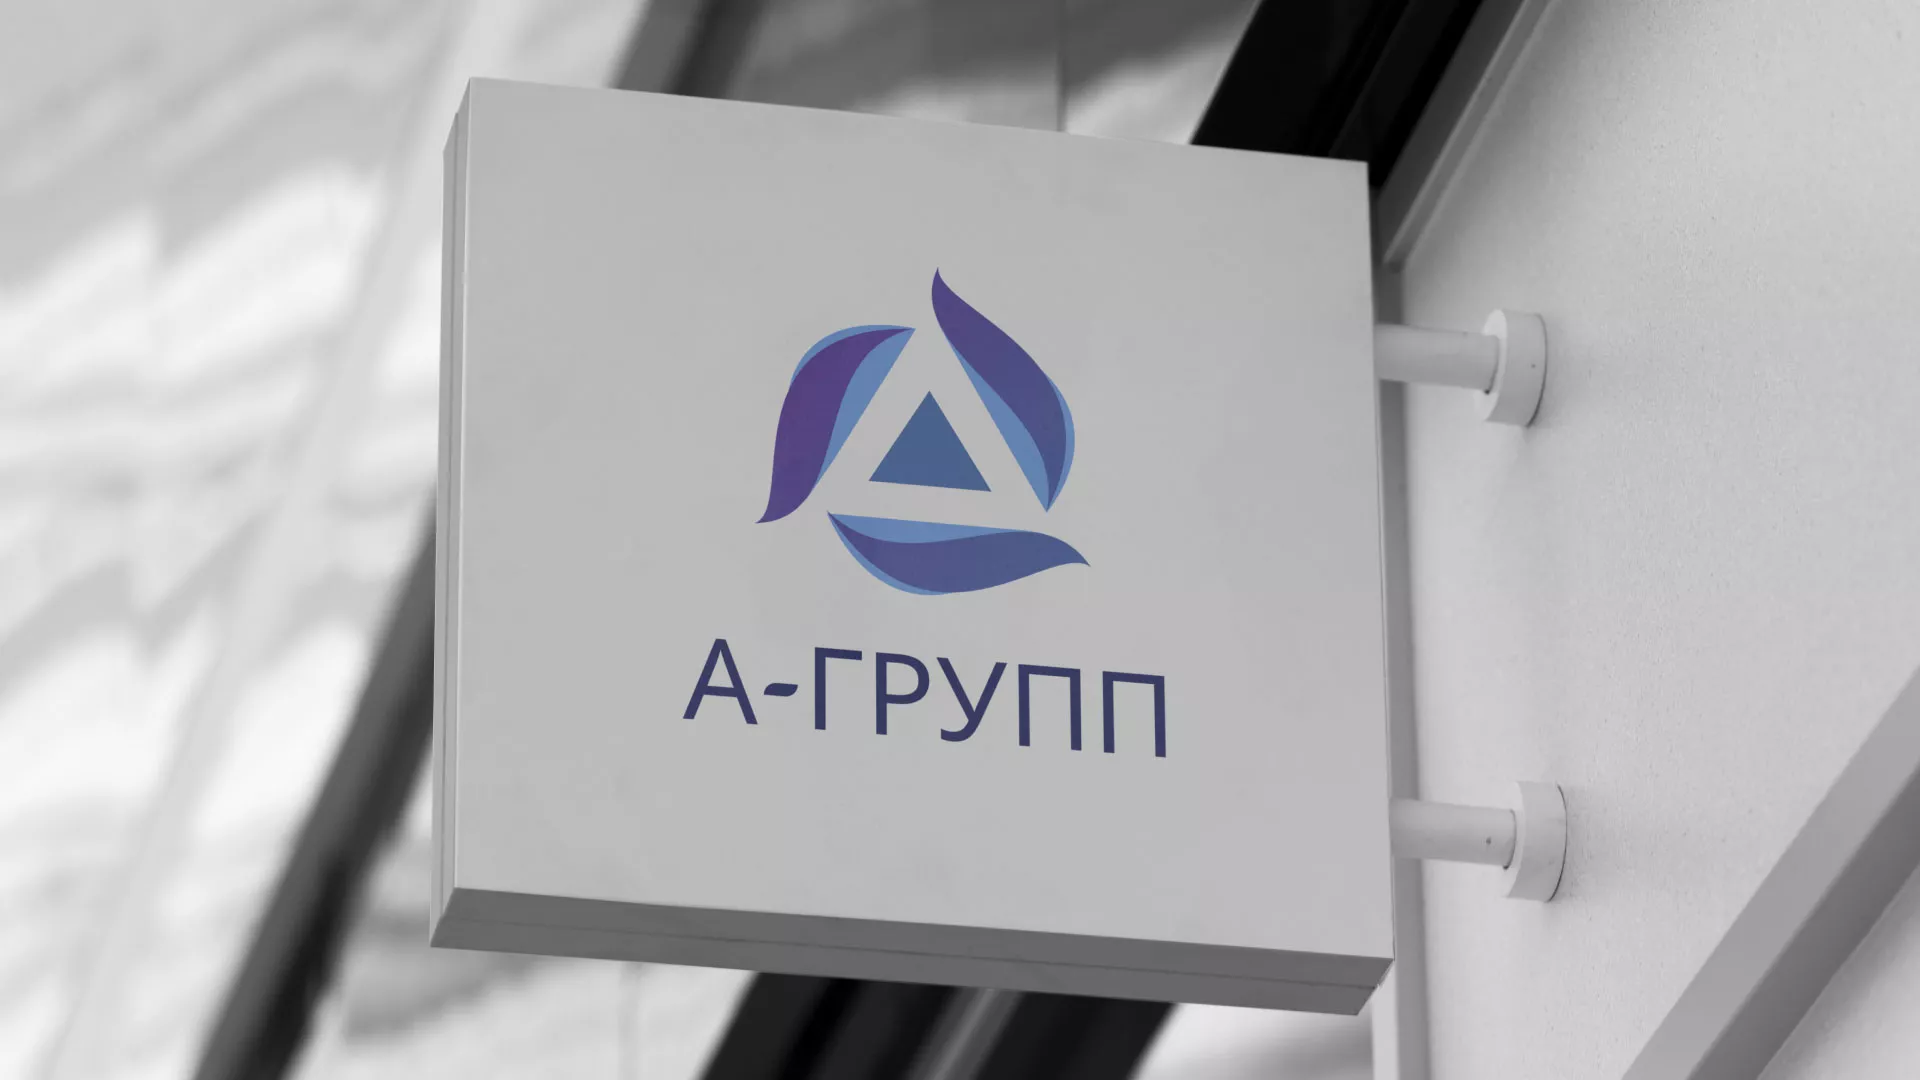 Создание логотипа компании «А-ГРУПП» в Суворове